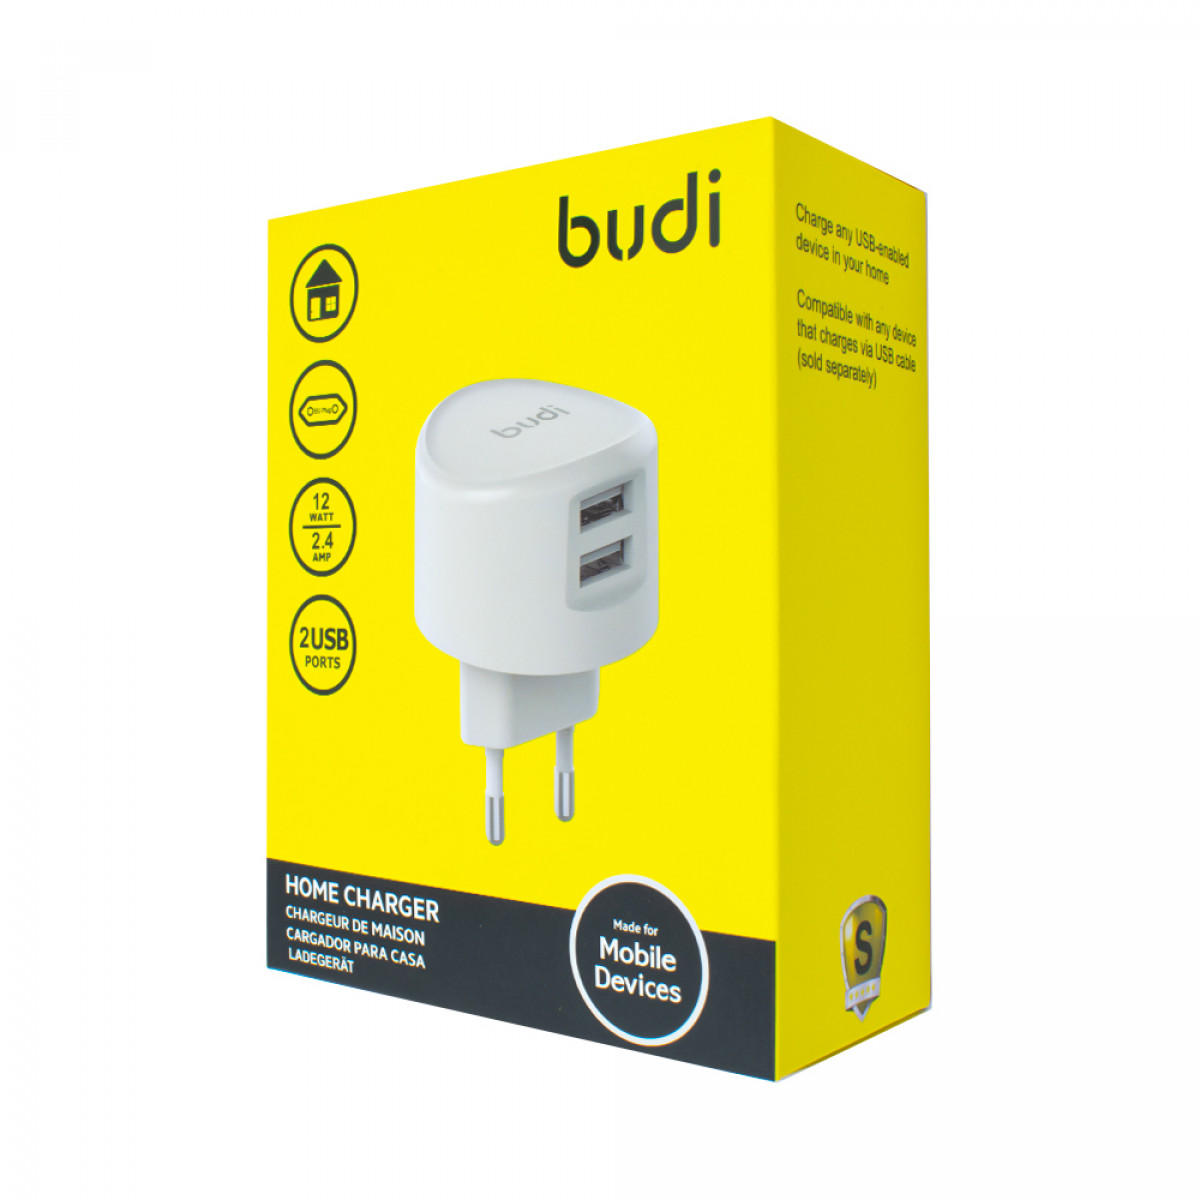 M8J323E - Home Charger Budi 2 USB home charger with UK plug